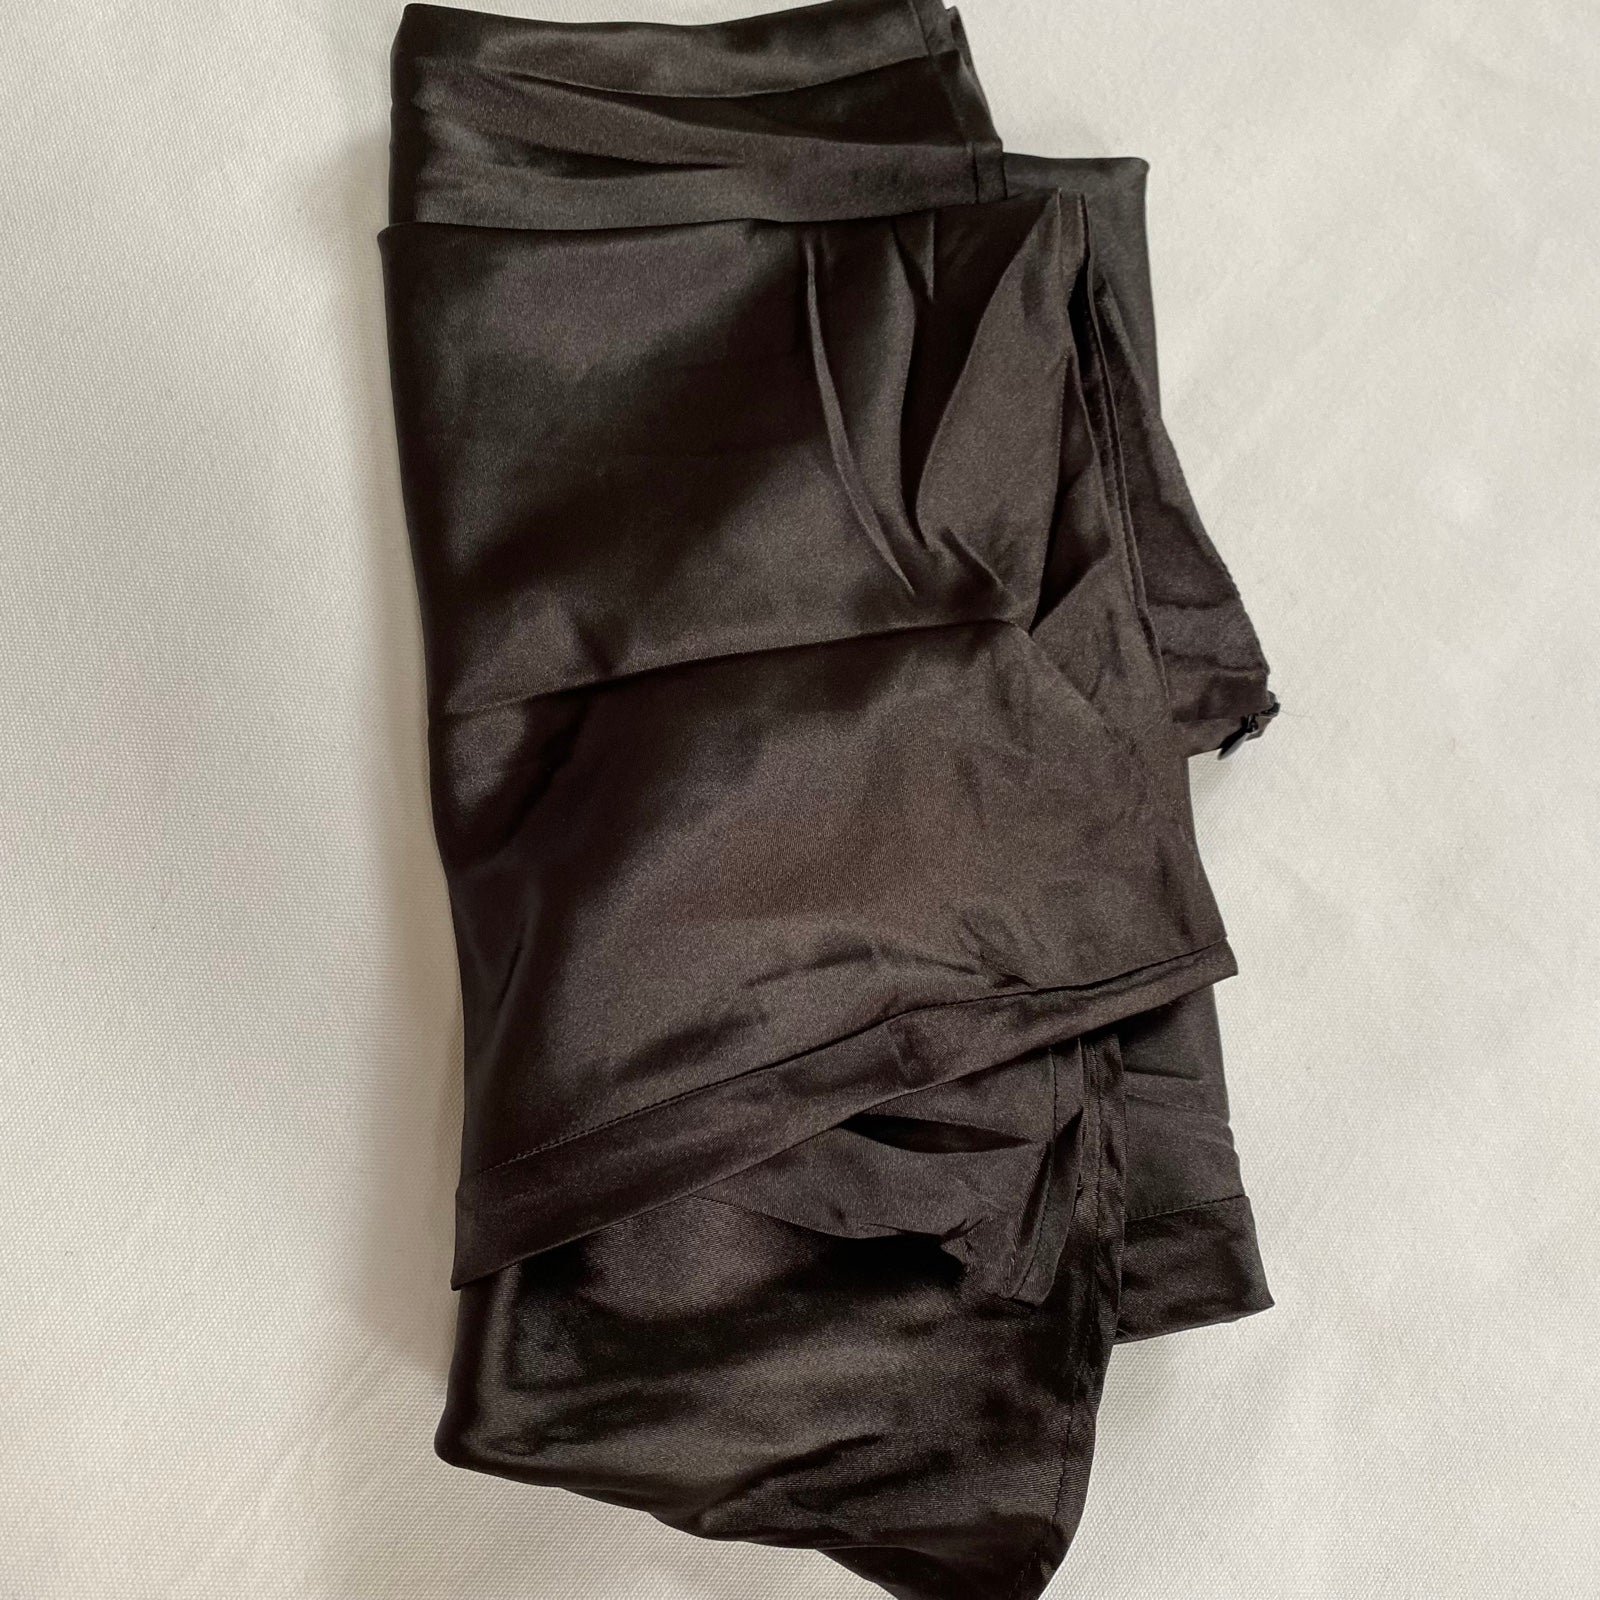 floor price Midi Slip Skirt Size Medium Black NWOT OH1N5dQ40 Cheap